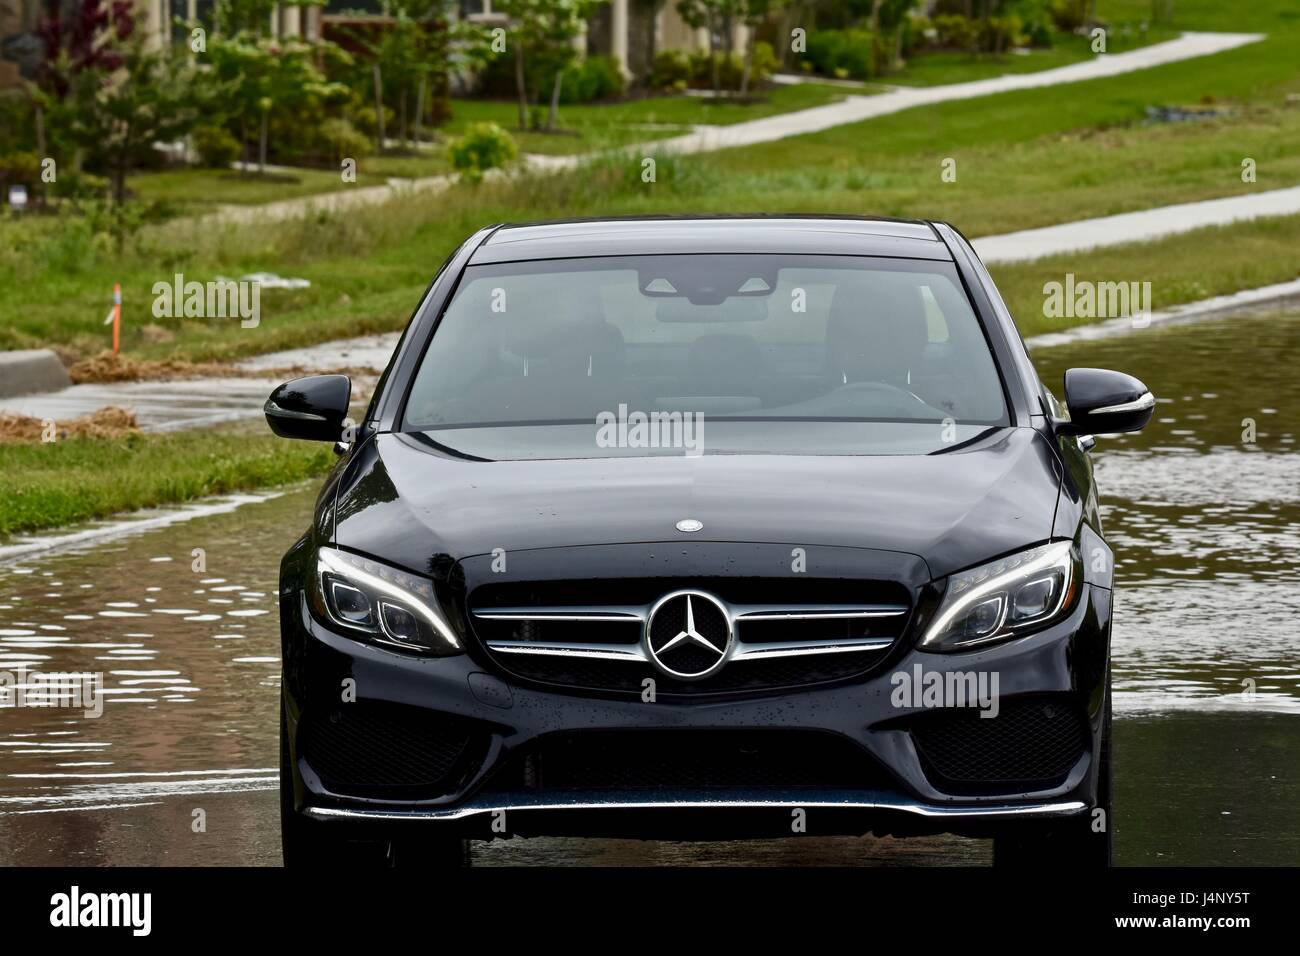 Schwarze Mercedes-benz auf einer überfluteten Straße geparkt  Stockfotografie - Alamy